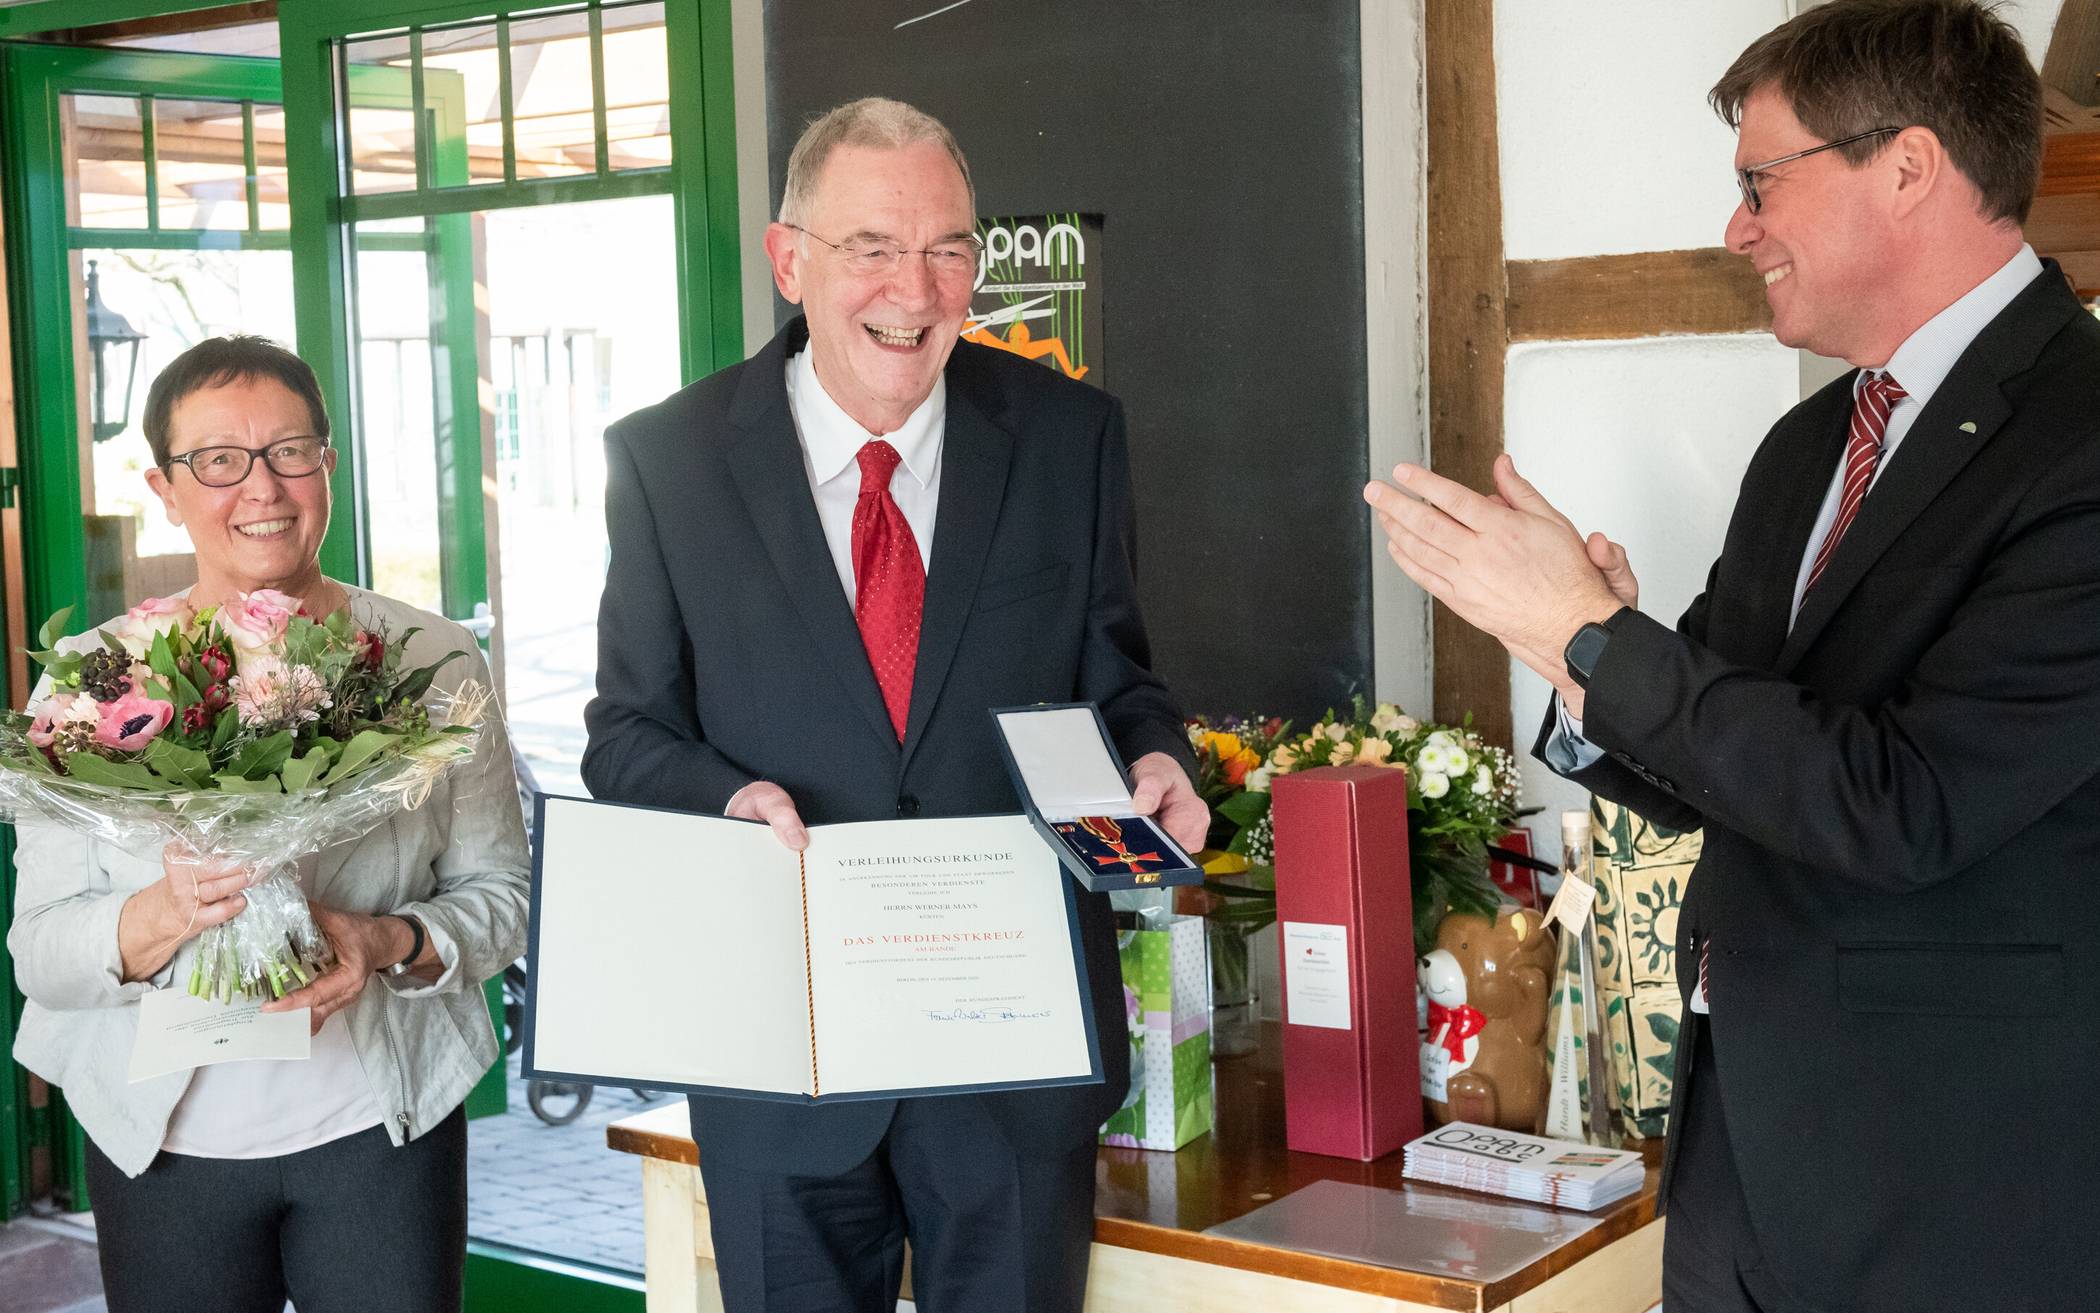  Dem OPAM-Vorsitzenden Werner Mays wurde das Bundesverdienstkreuz verliehen. 
  